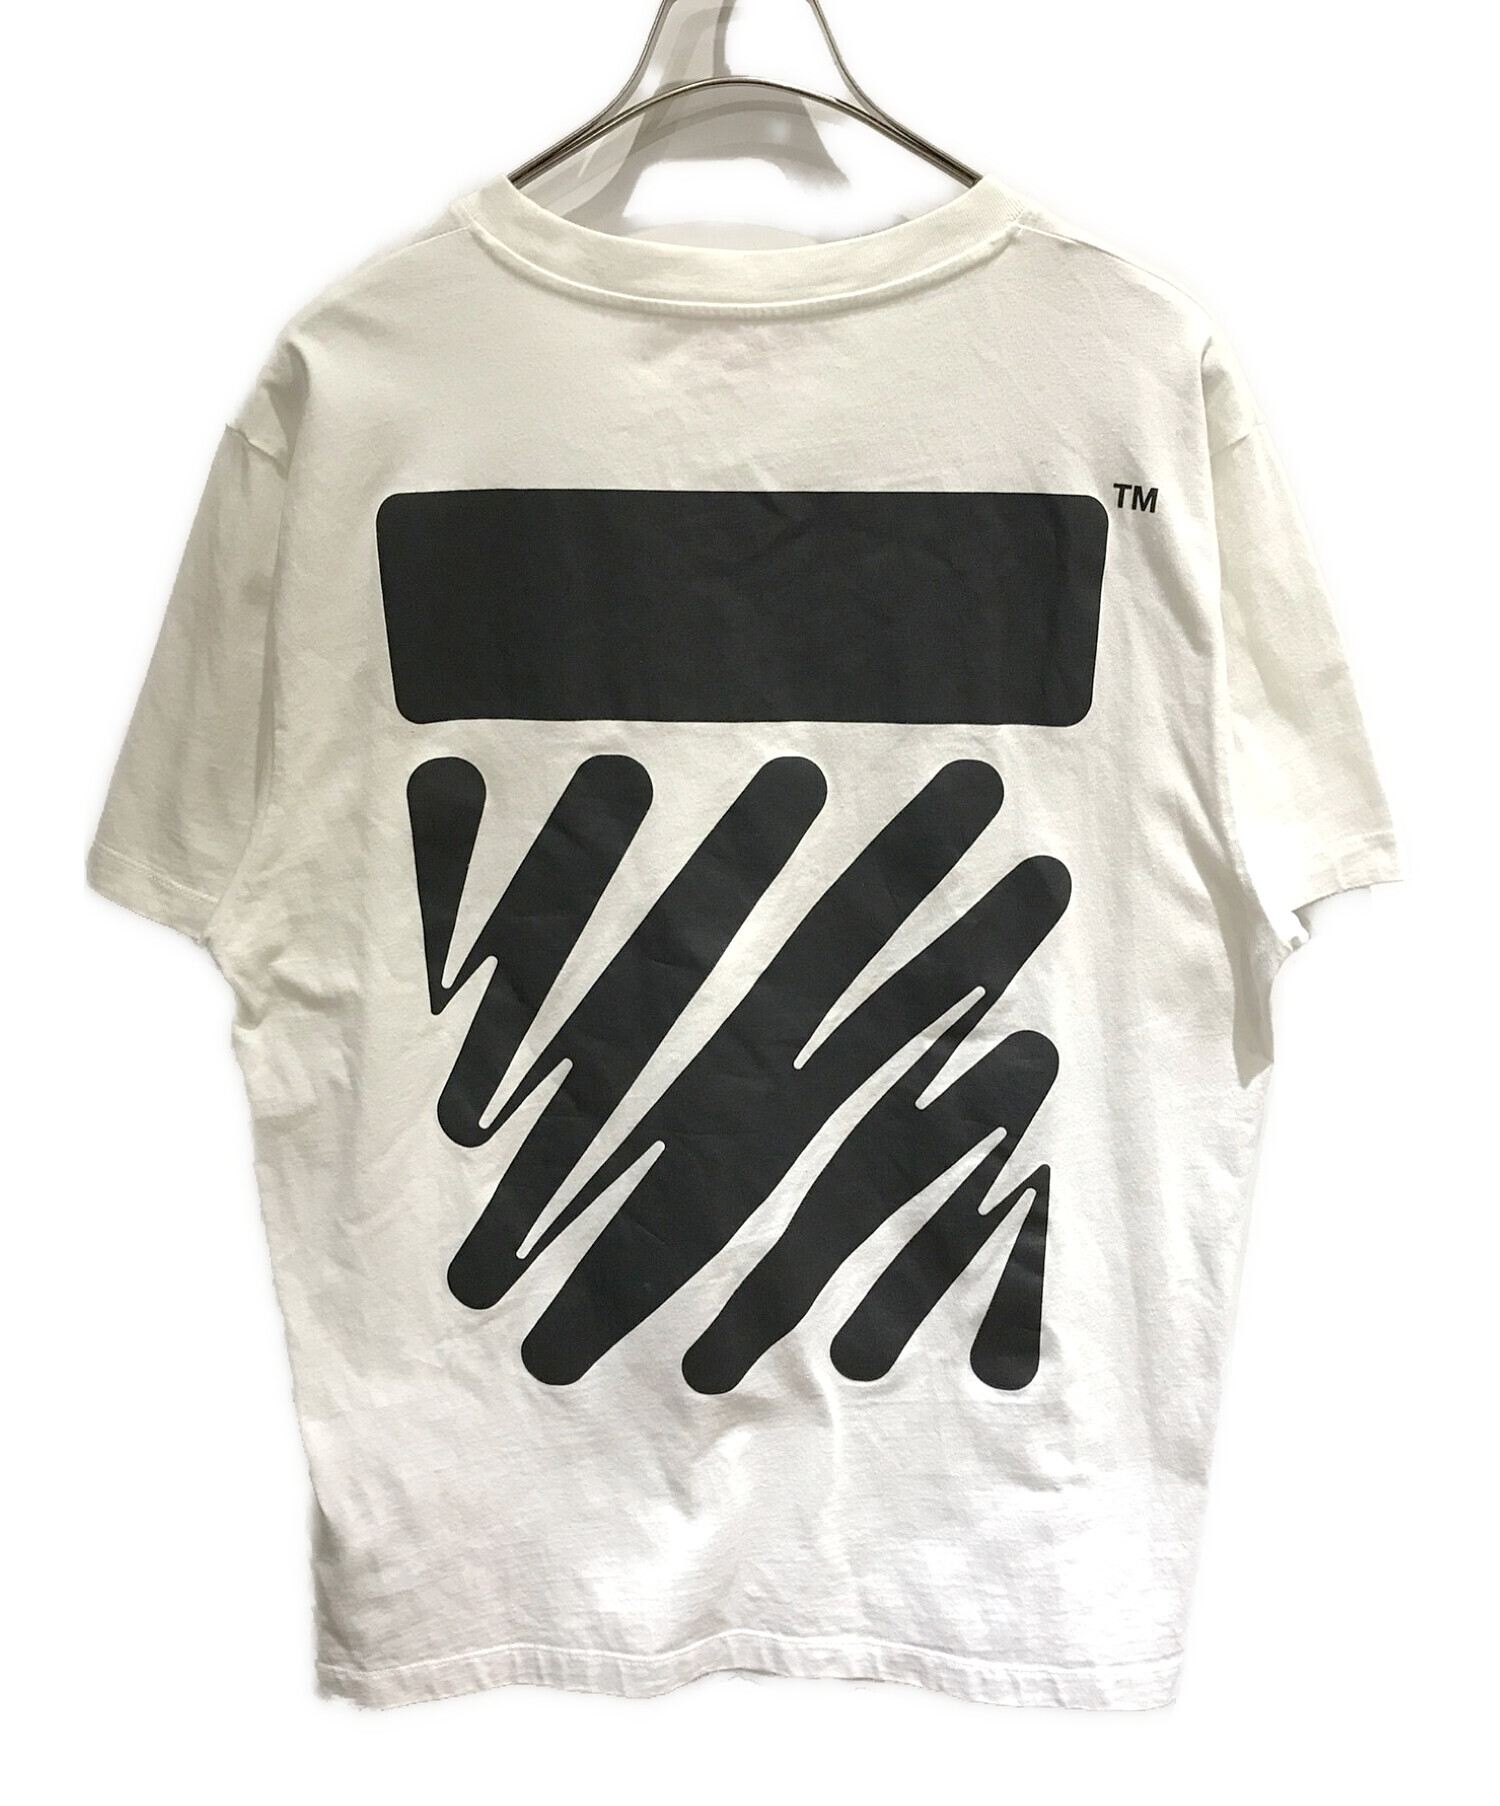 中古・古着通販】OFFWHITE (オフホワイト) VIRGIL ABLOH Tシャツ ...